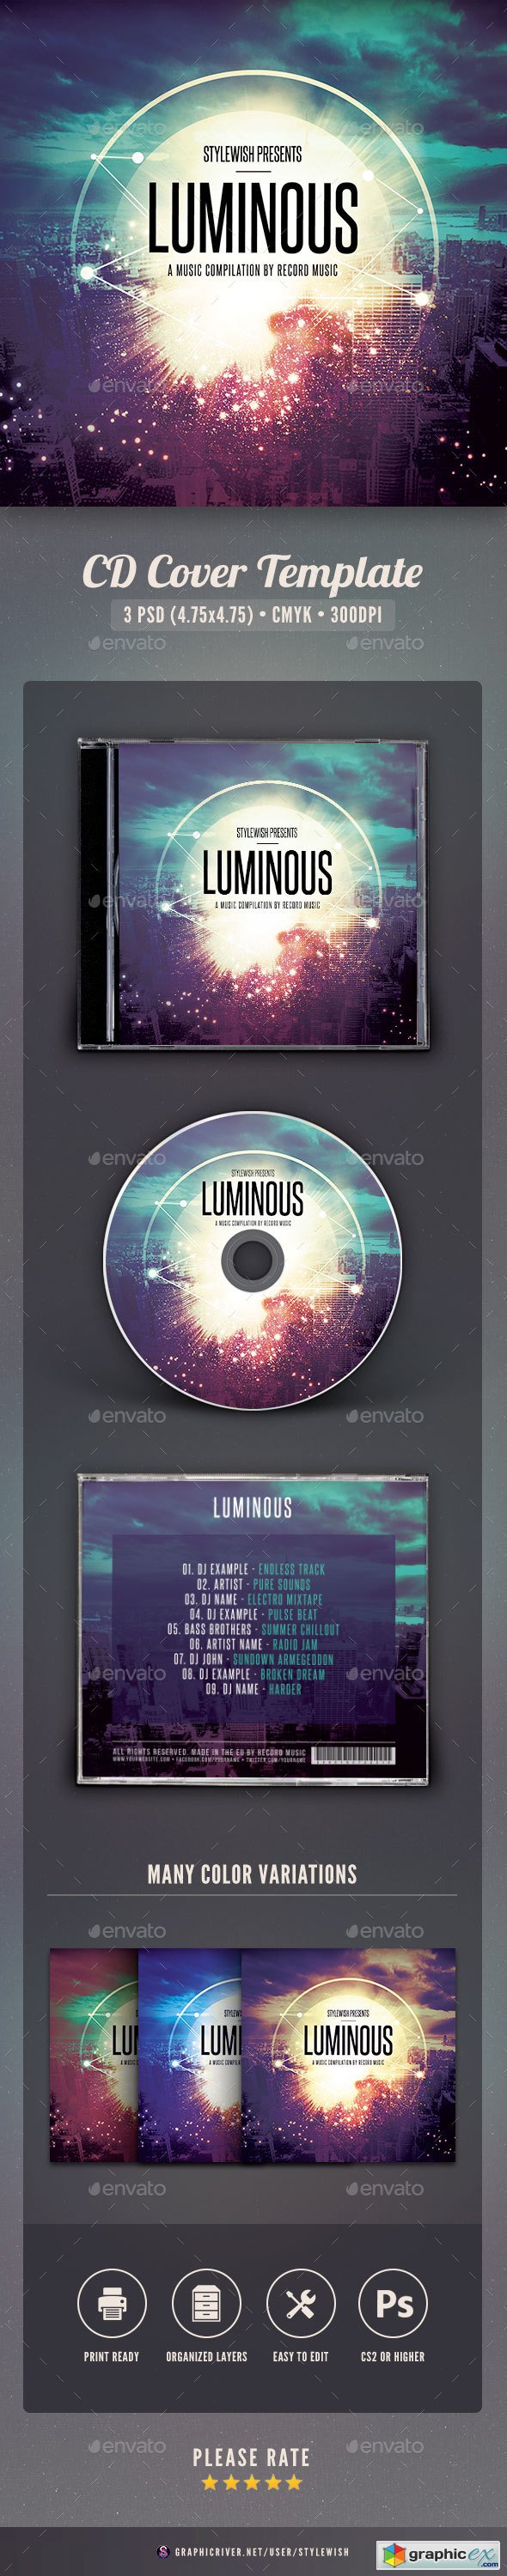 Luminous CD Cover Artwork